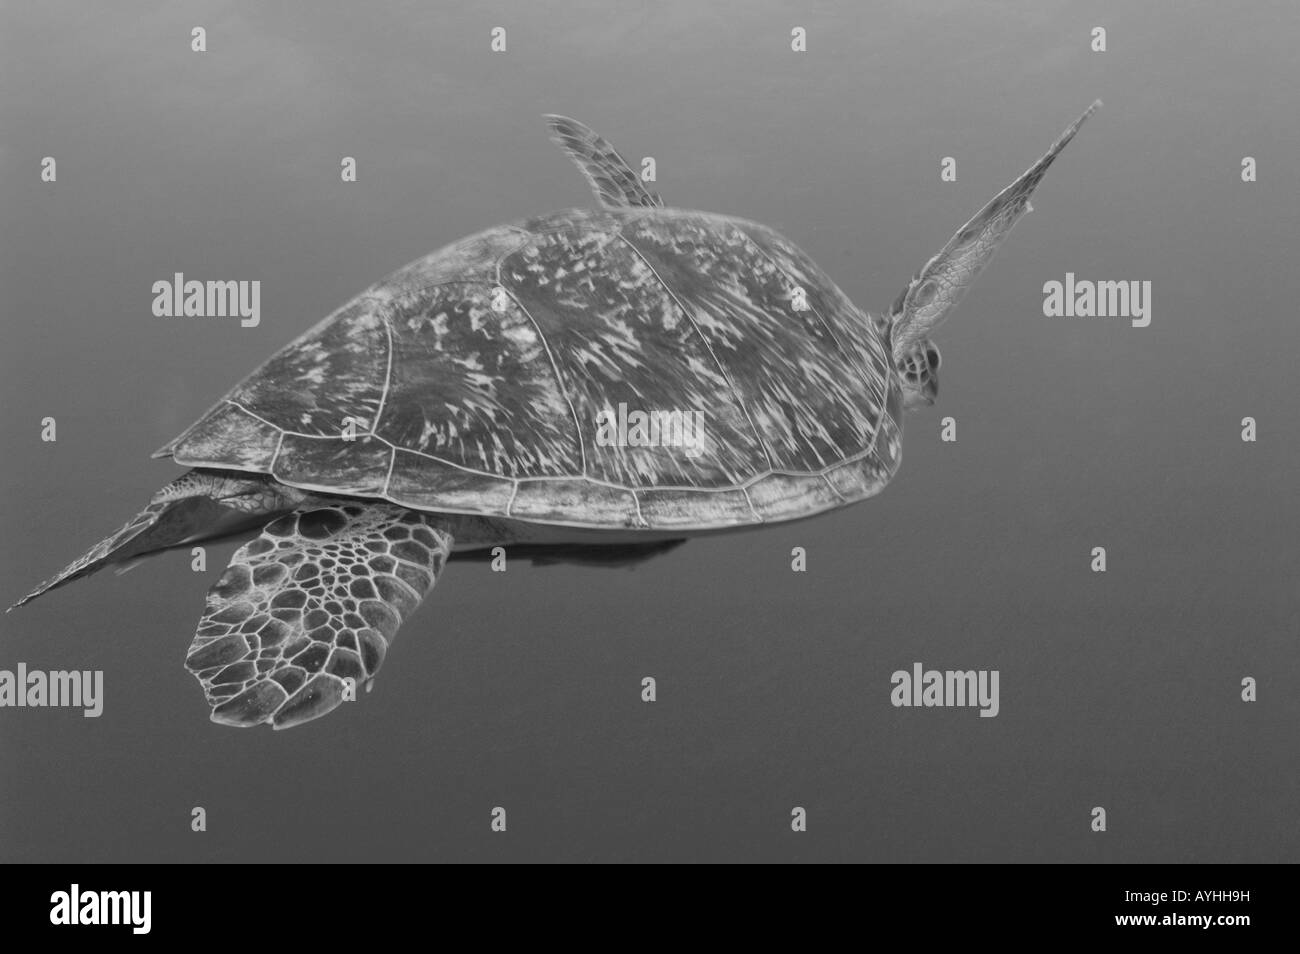 Tartaruga Verde nuoto Chelonia Mydas Gili Trawangan Lombok Indonesia Oceano Pacifico le specie in via di estinzione Foto Stock